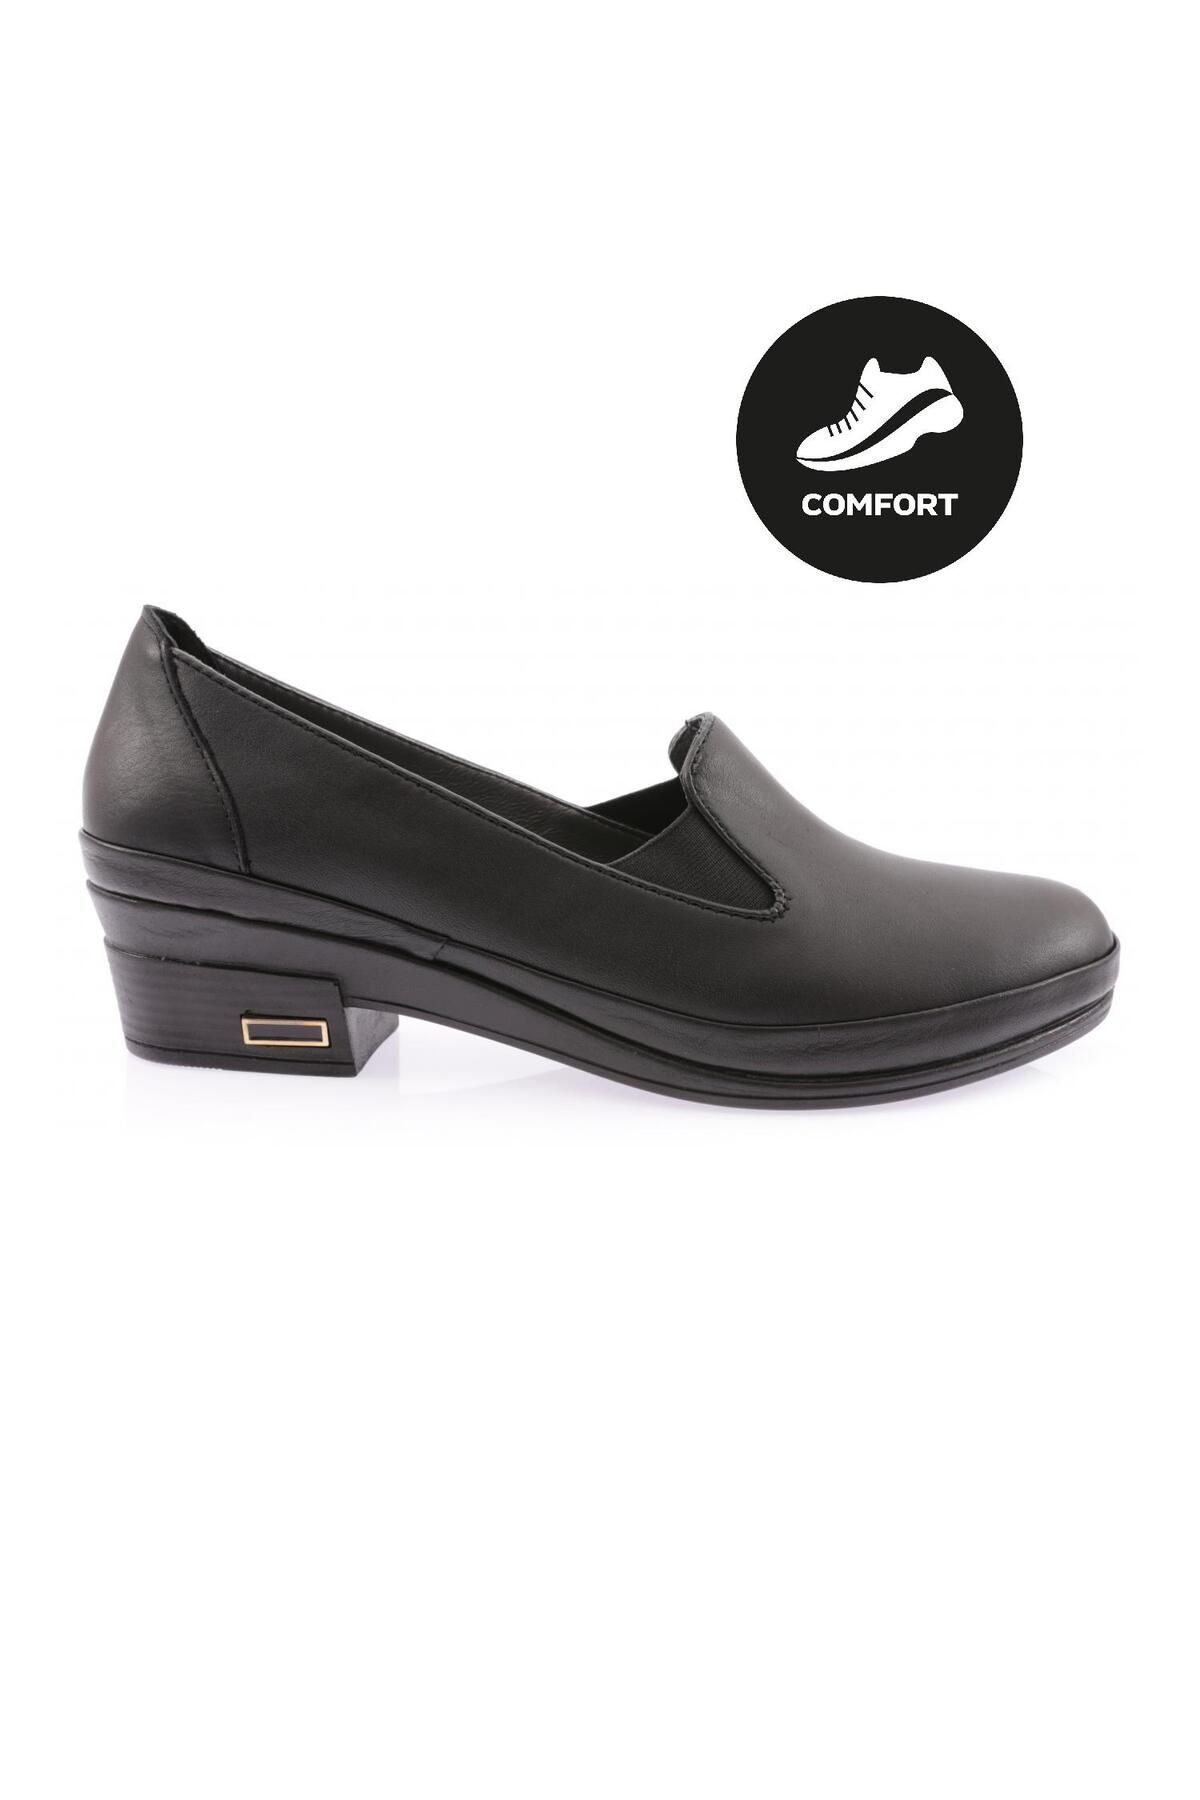 Dgn 065 Kadın Comfort Ayakkabı Hakiki Deri Siyah